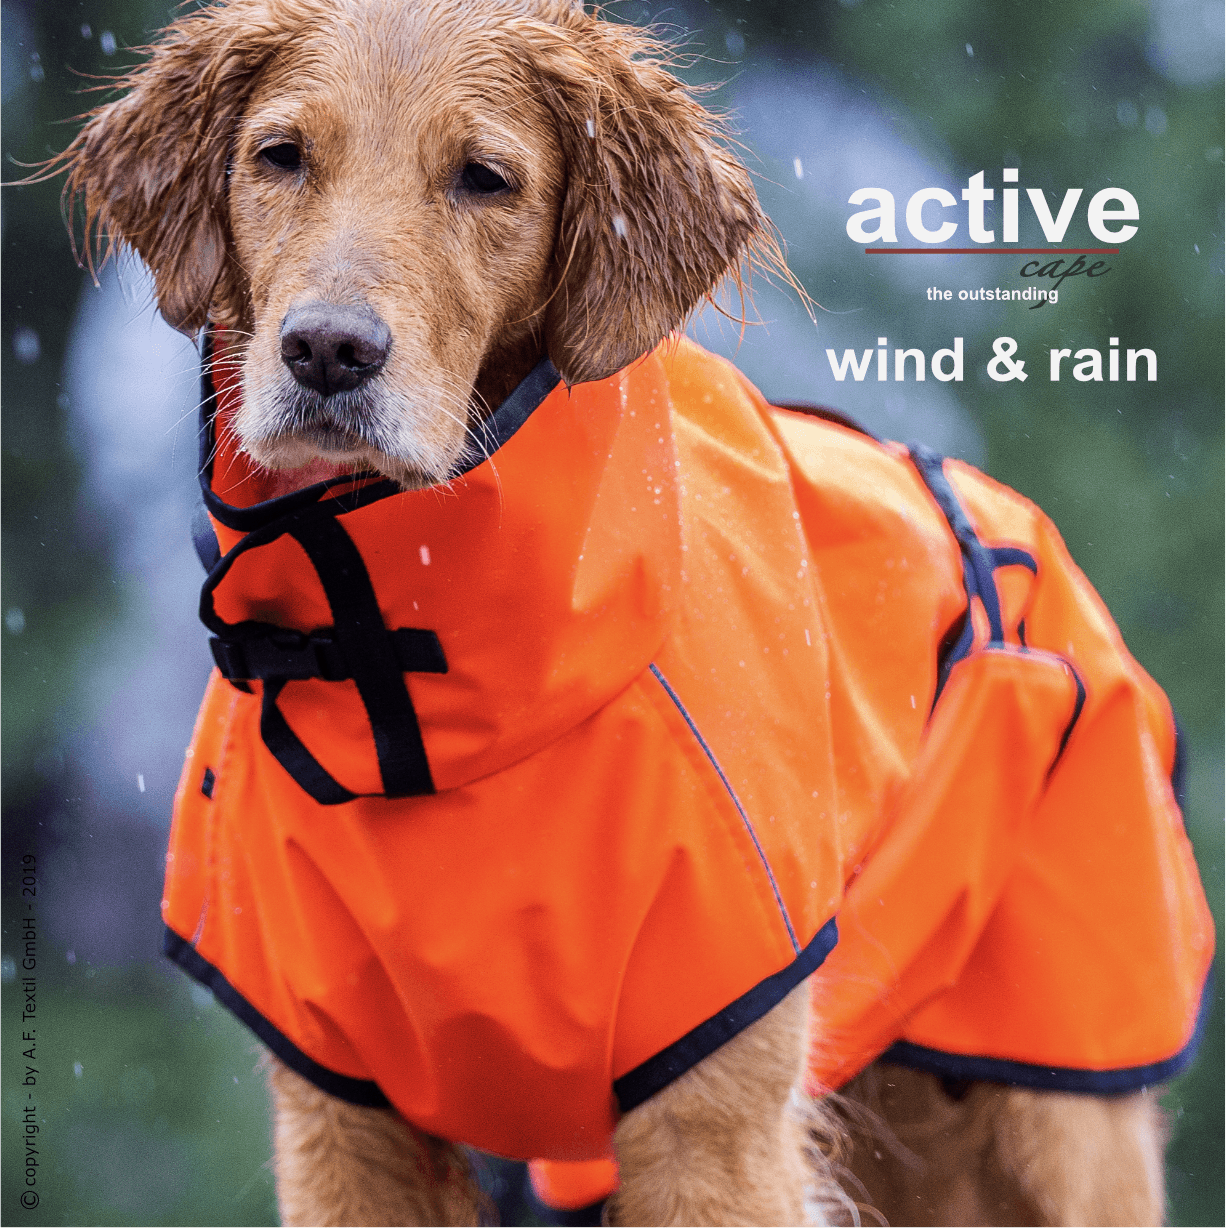 Active Cape Wind & Rain - Action Factory - Art:Wasser- und windabweisender Mantel, Tierart:Hund - Marigin AG Onlineshop für Tierbedarf